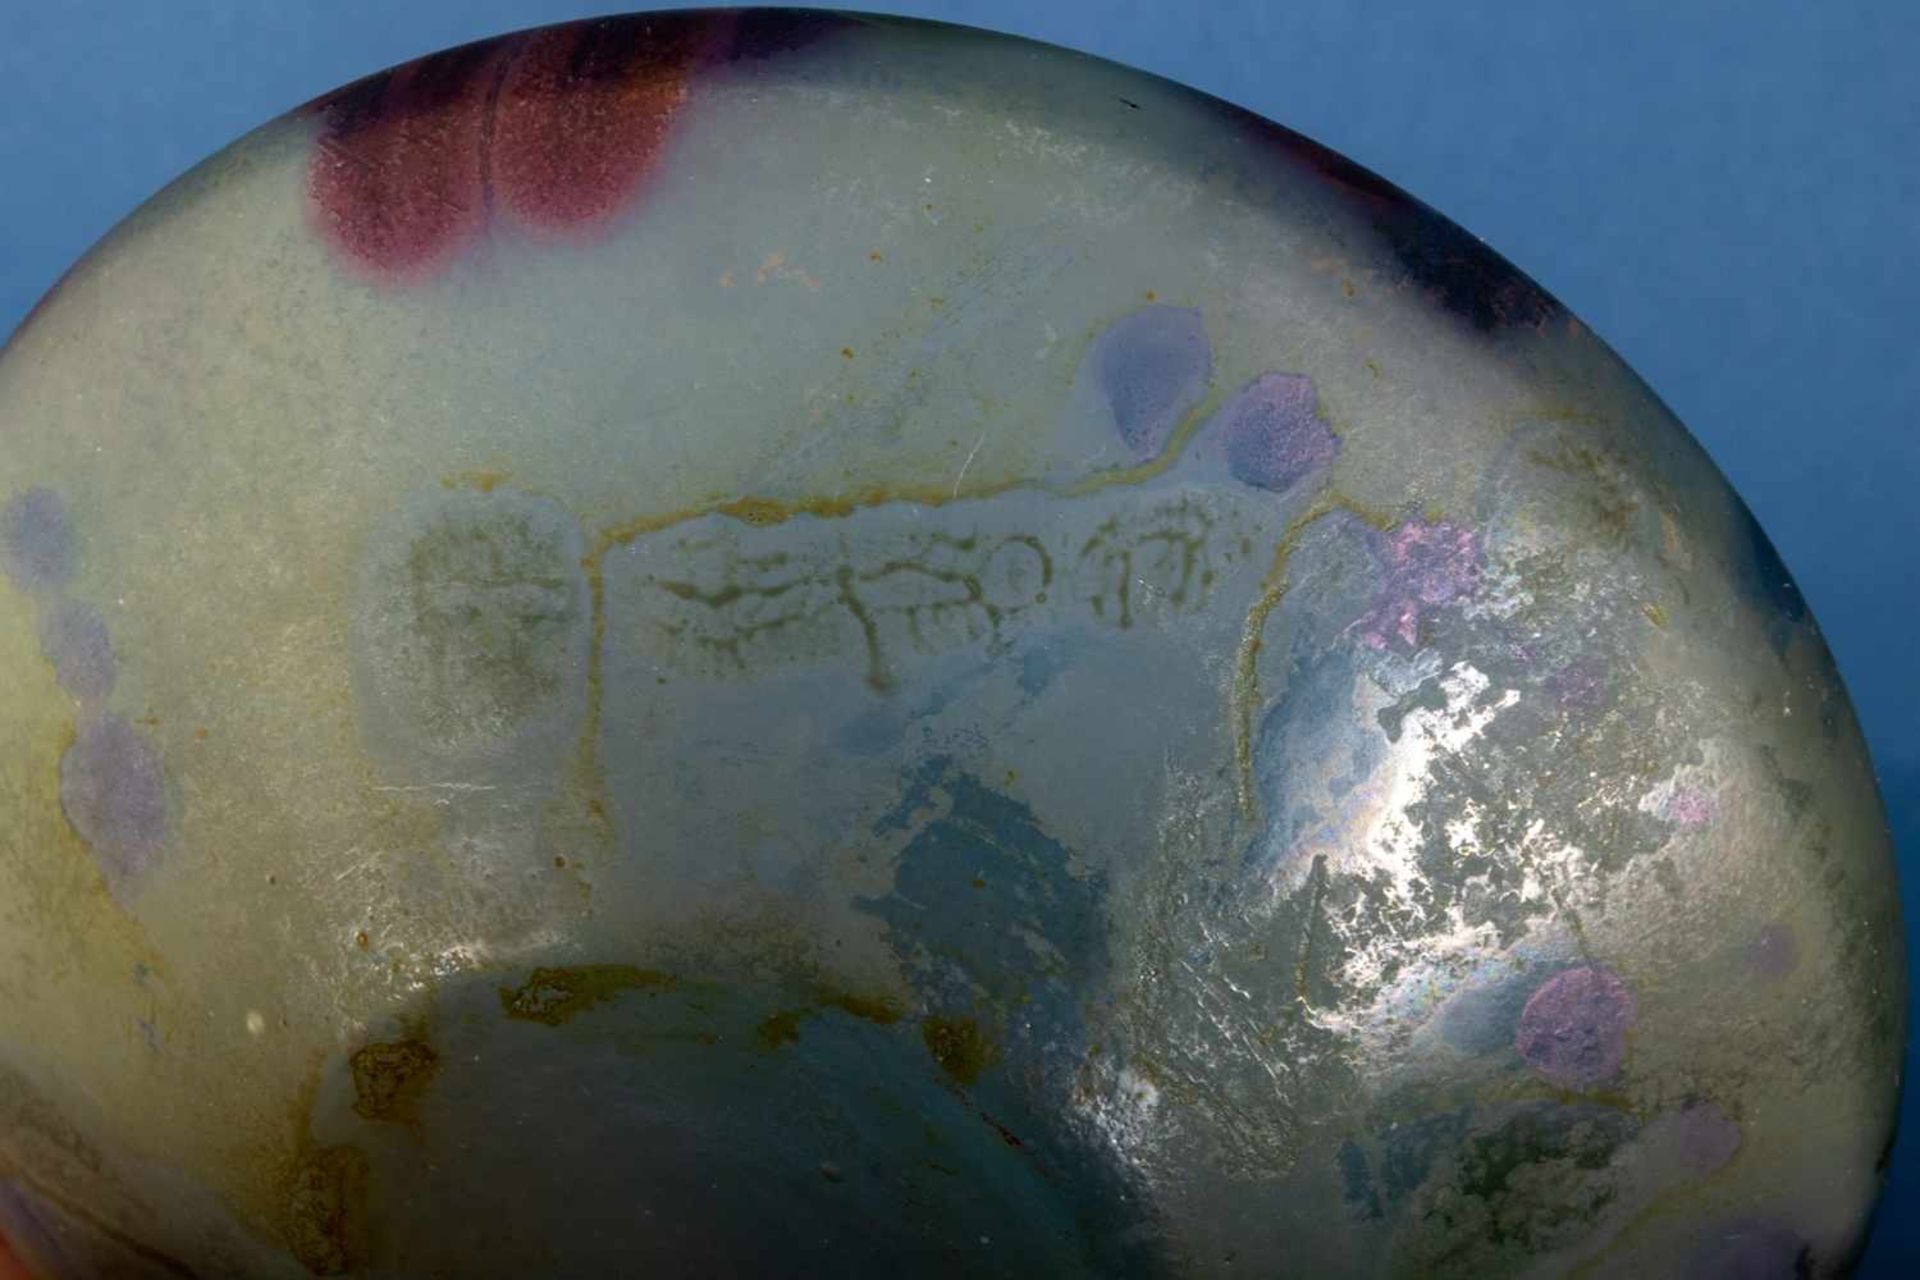 7teiliges Konvolut versch. Glasarbeiten, teilweise signiert, u. a. EISCH-Glas. Versch. Alter, Größen - Image 36 of 36